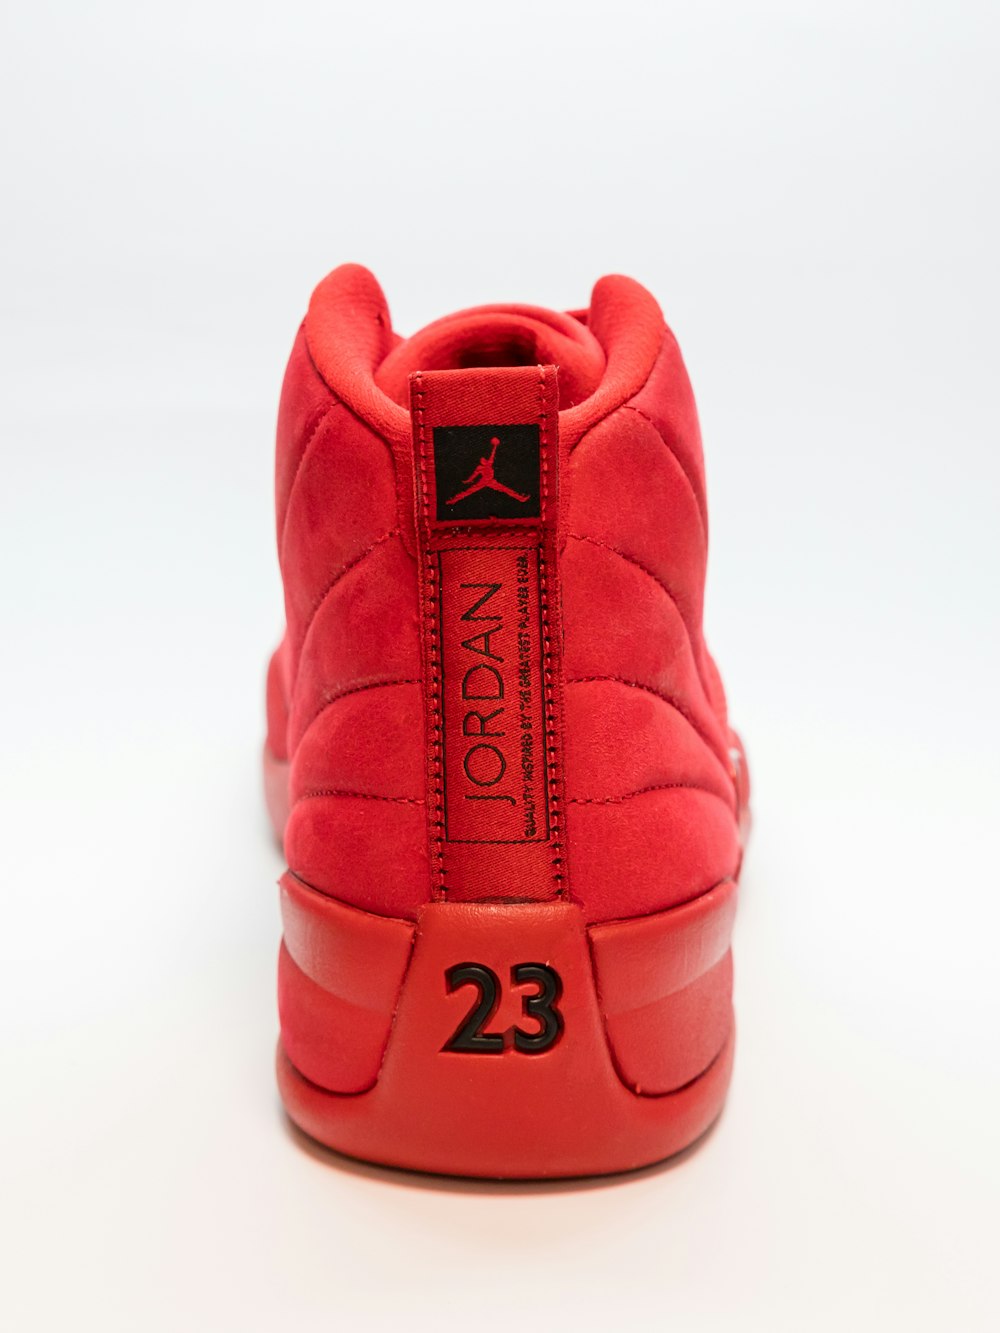 camioneta casete Penetración Foto zapatillas de baloncesto Air Jordan rojas sin emparejar – Imagen Rojo  gratis en Unsplash